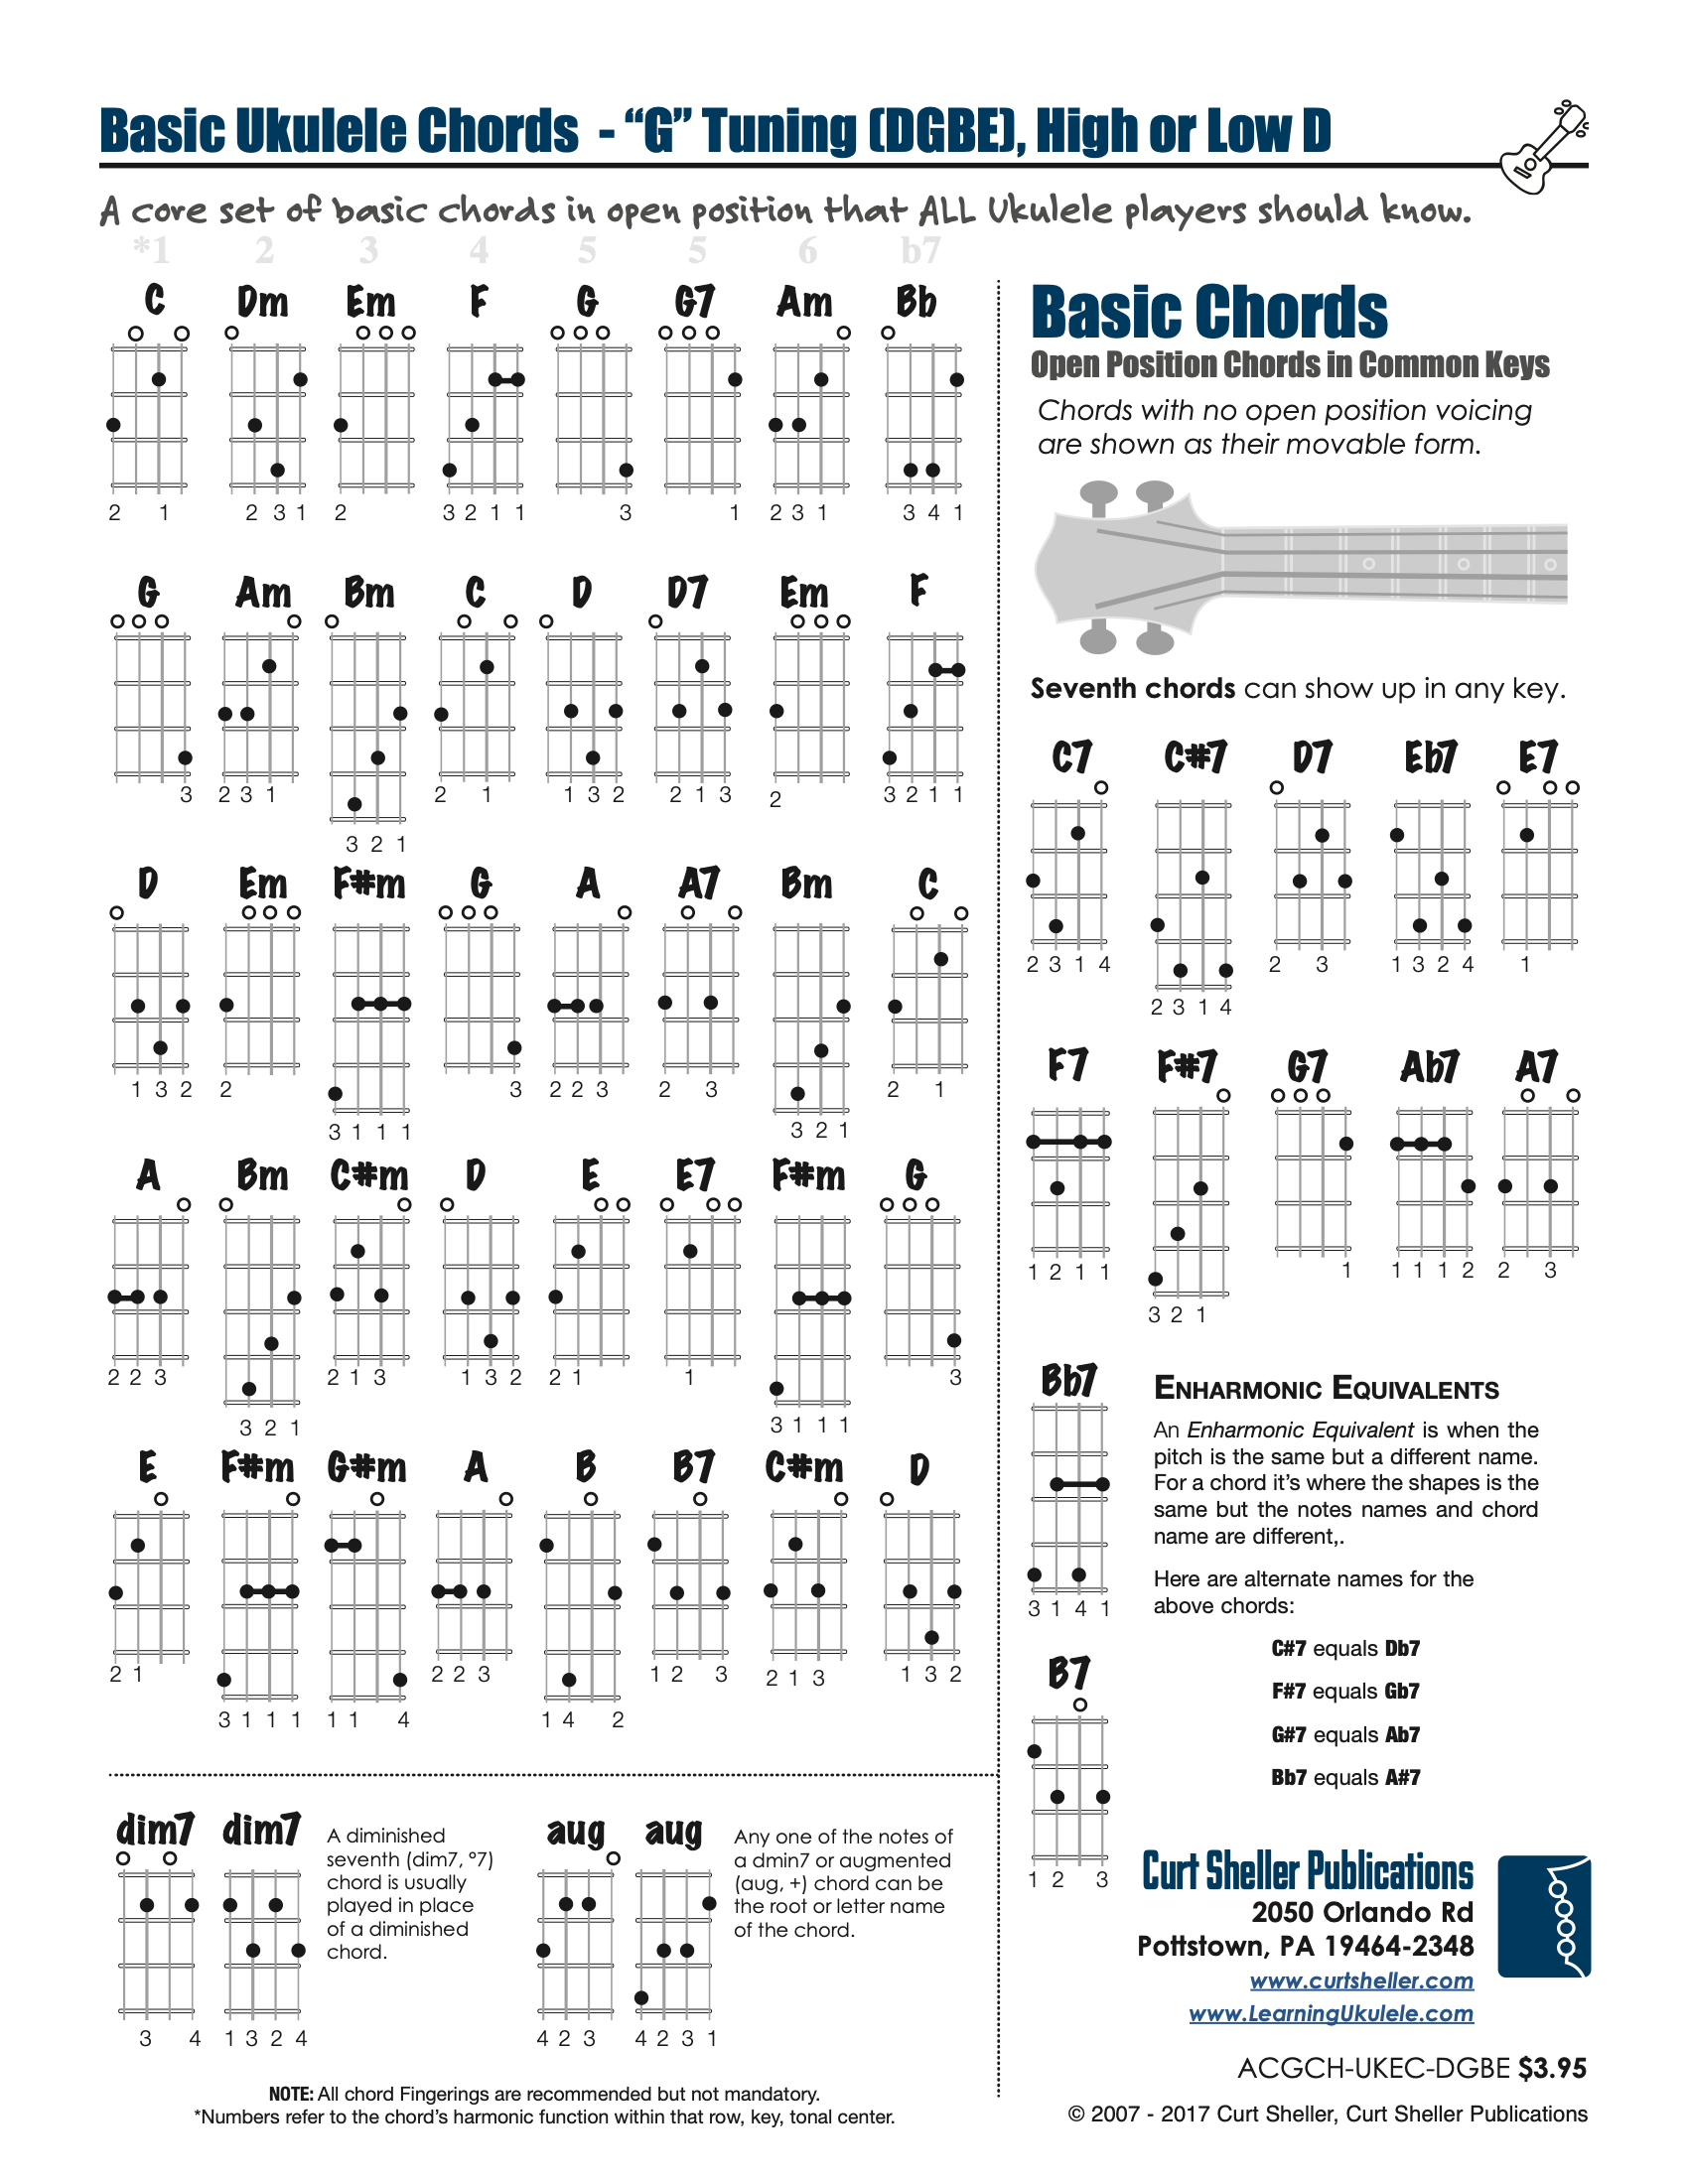 Complete Ukulele Chord Charts In Baritone Tuning Ukuchords.